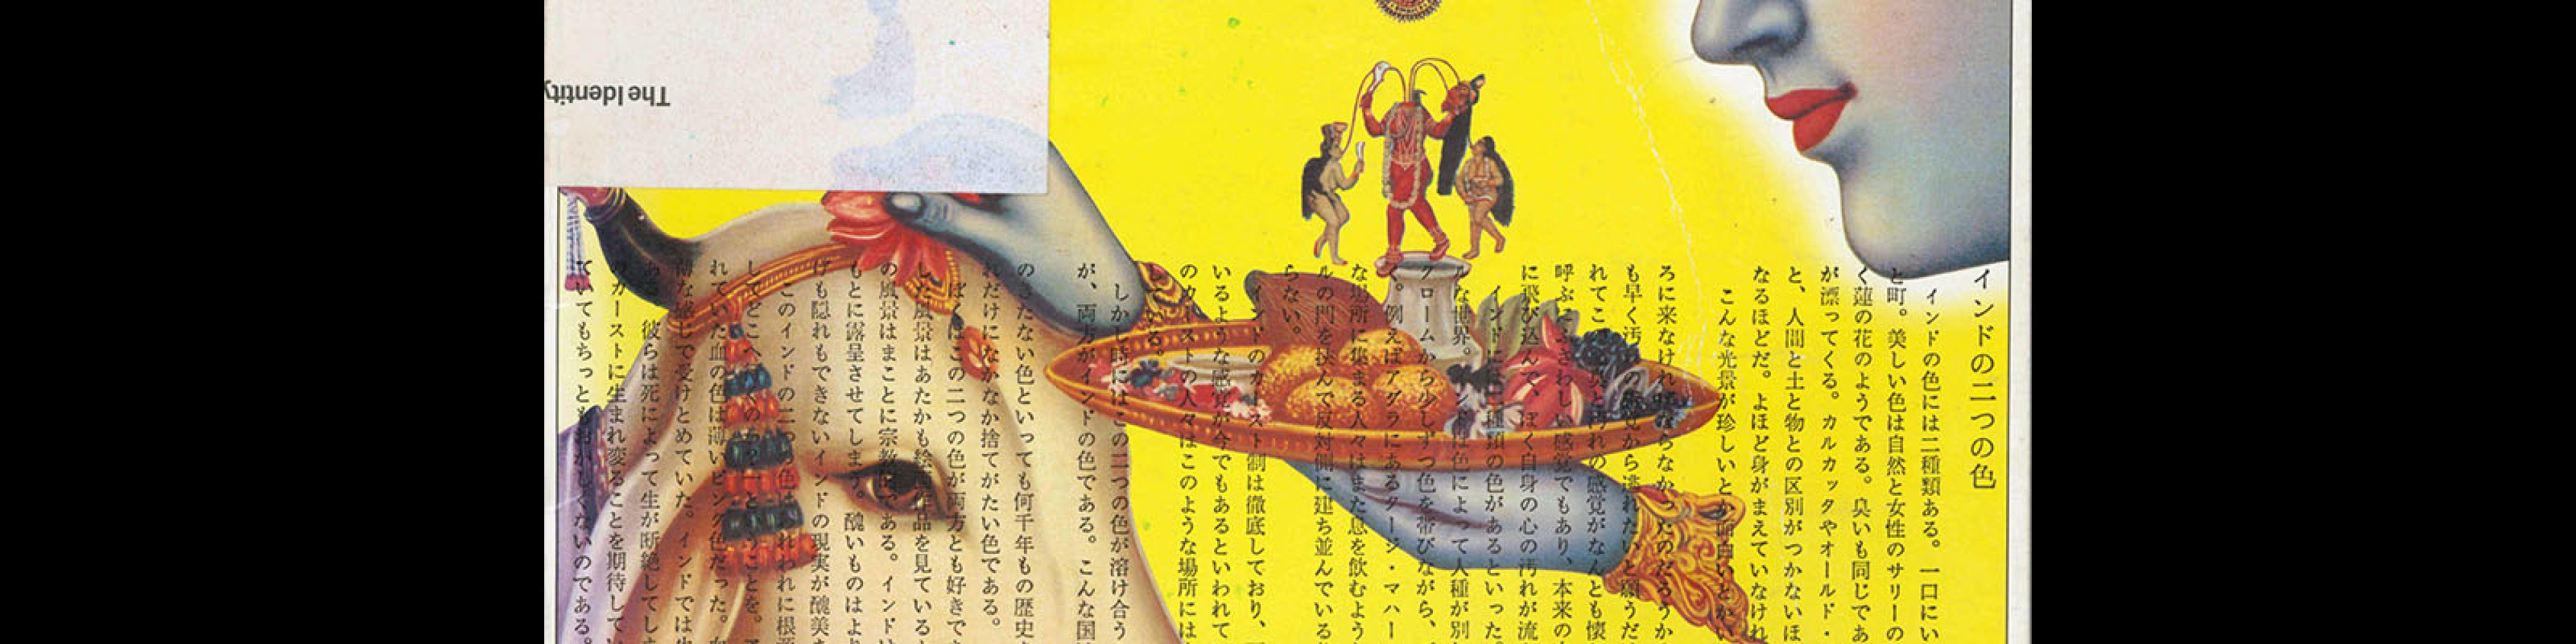 Idea 147, 1978-3, Cover design by Tadanori Yokoo